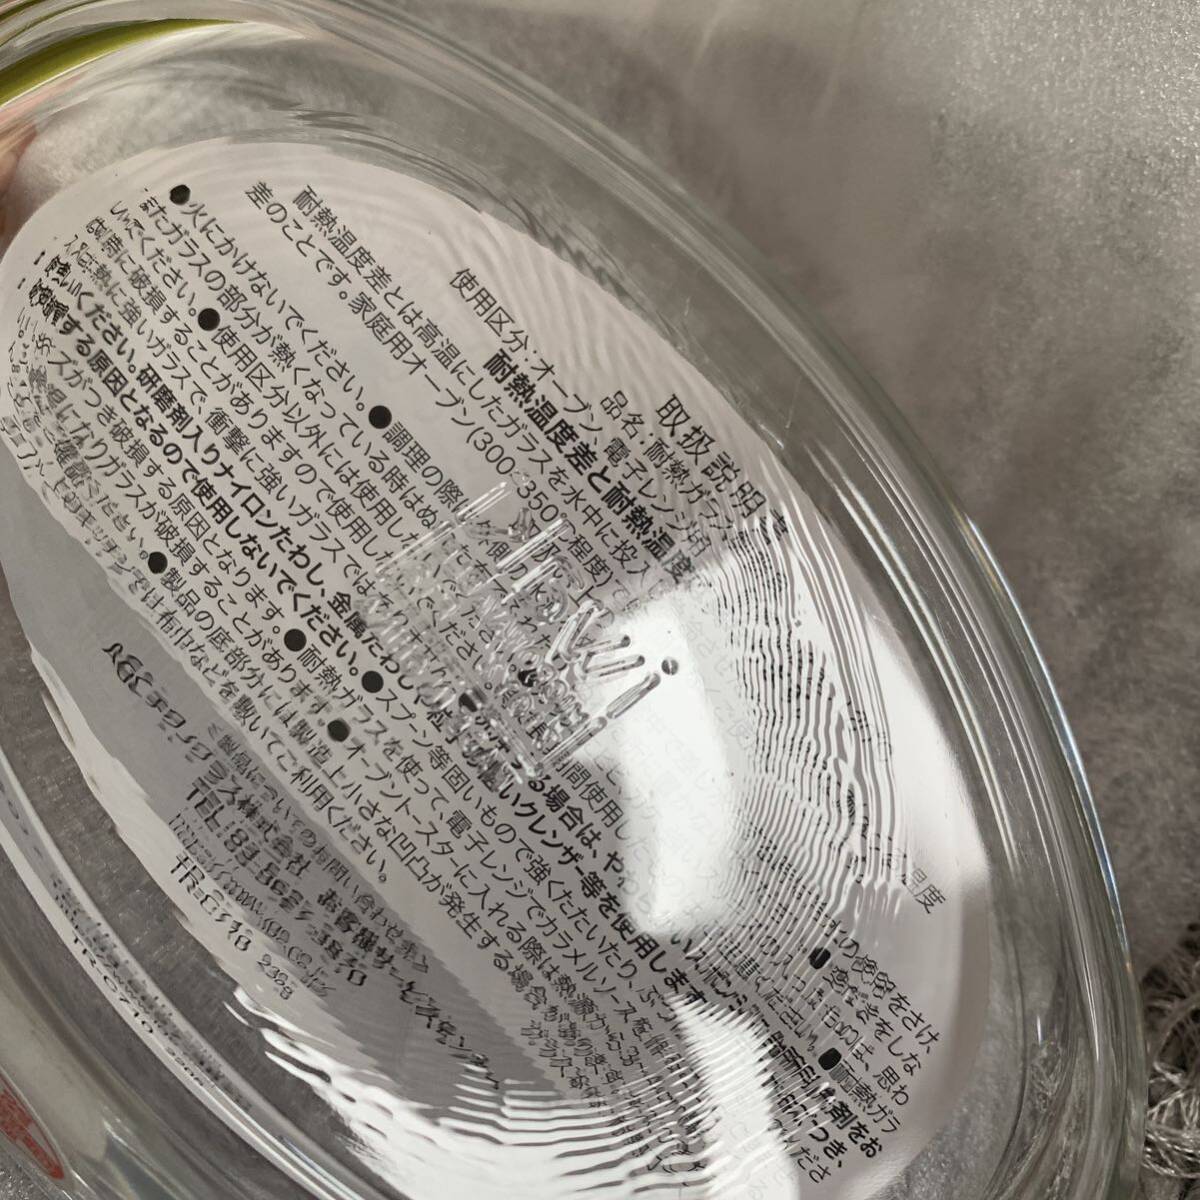 iwakiイワキ 耐熱ガラス グラタン皿 3.7×19.5cm 340ml 2つ